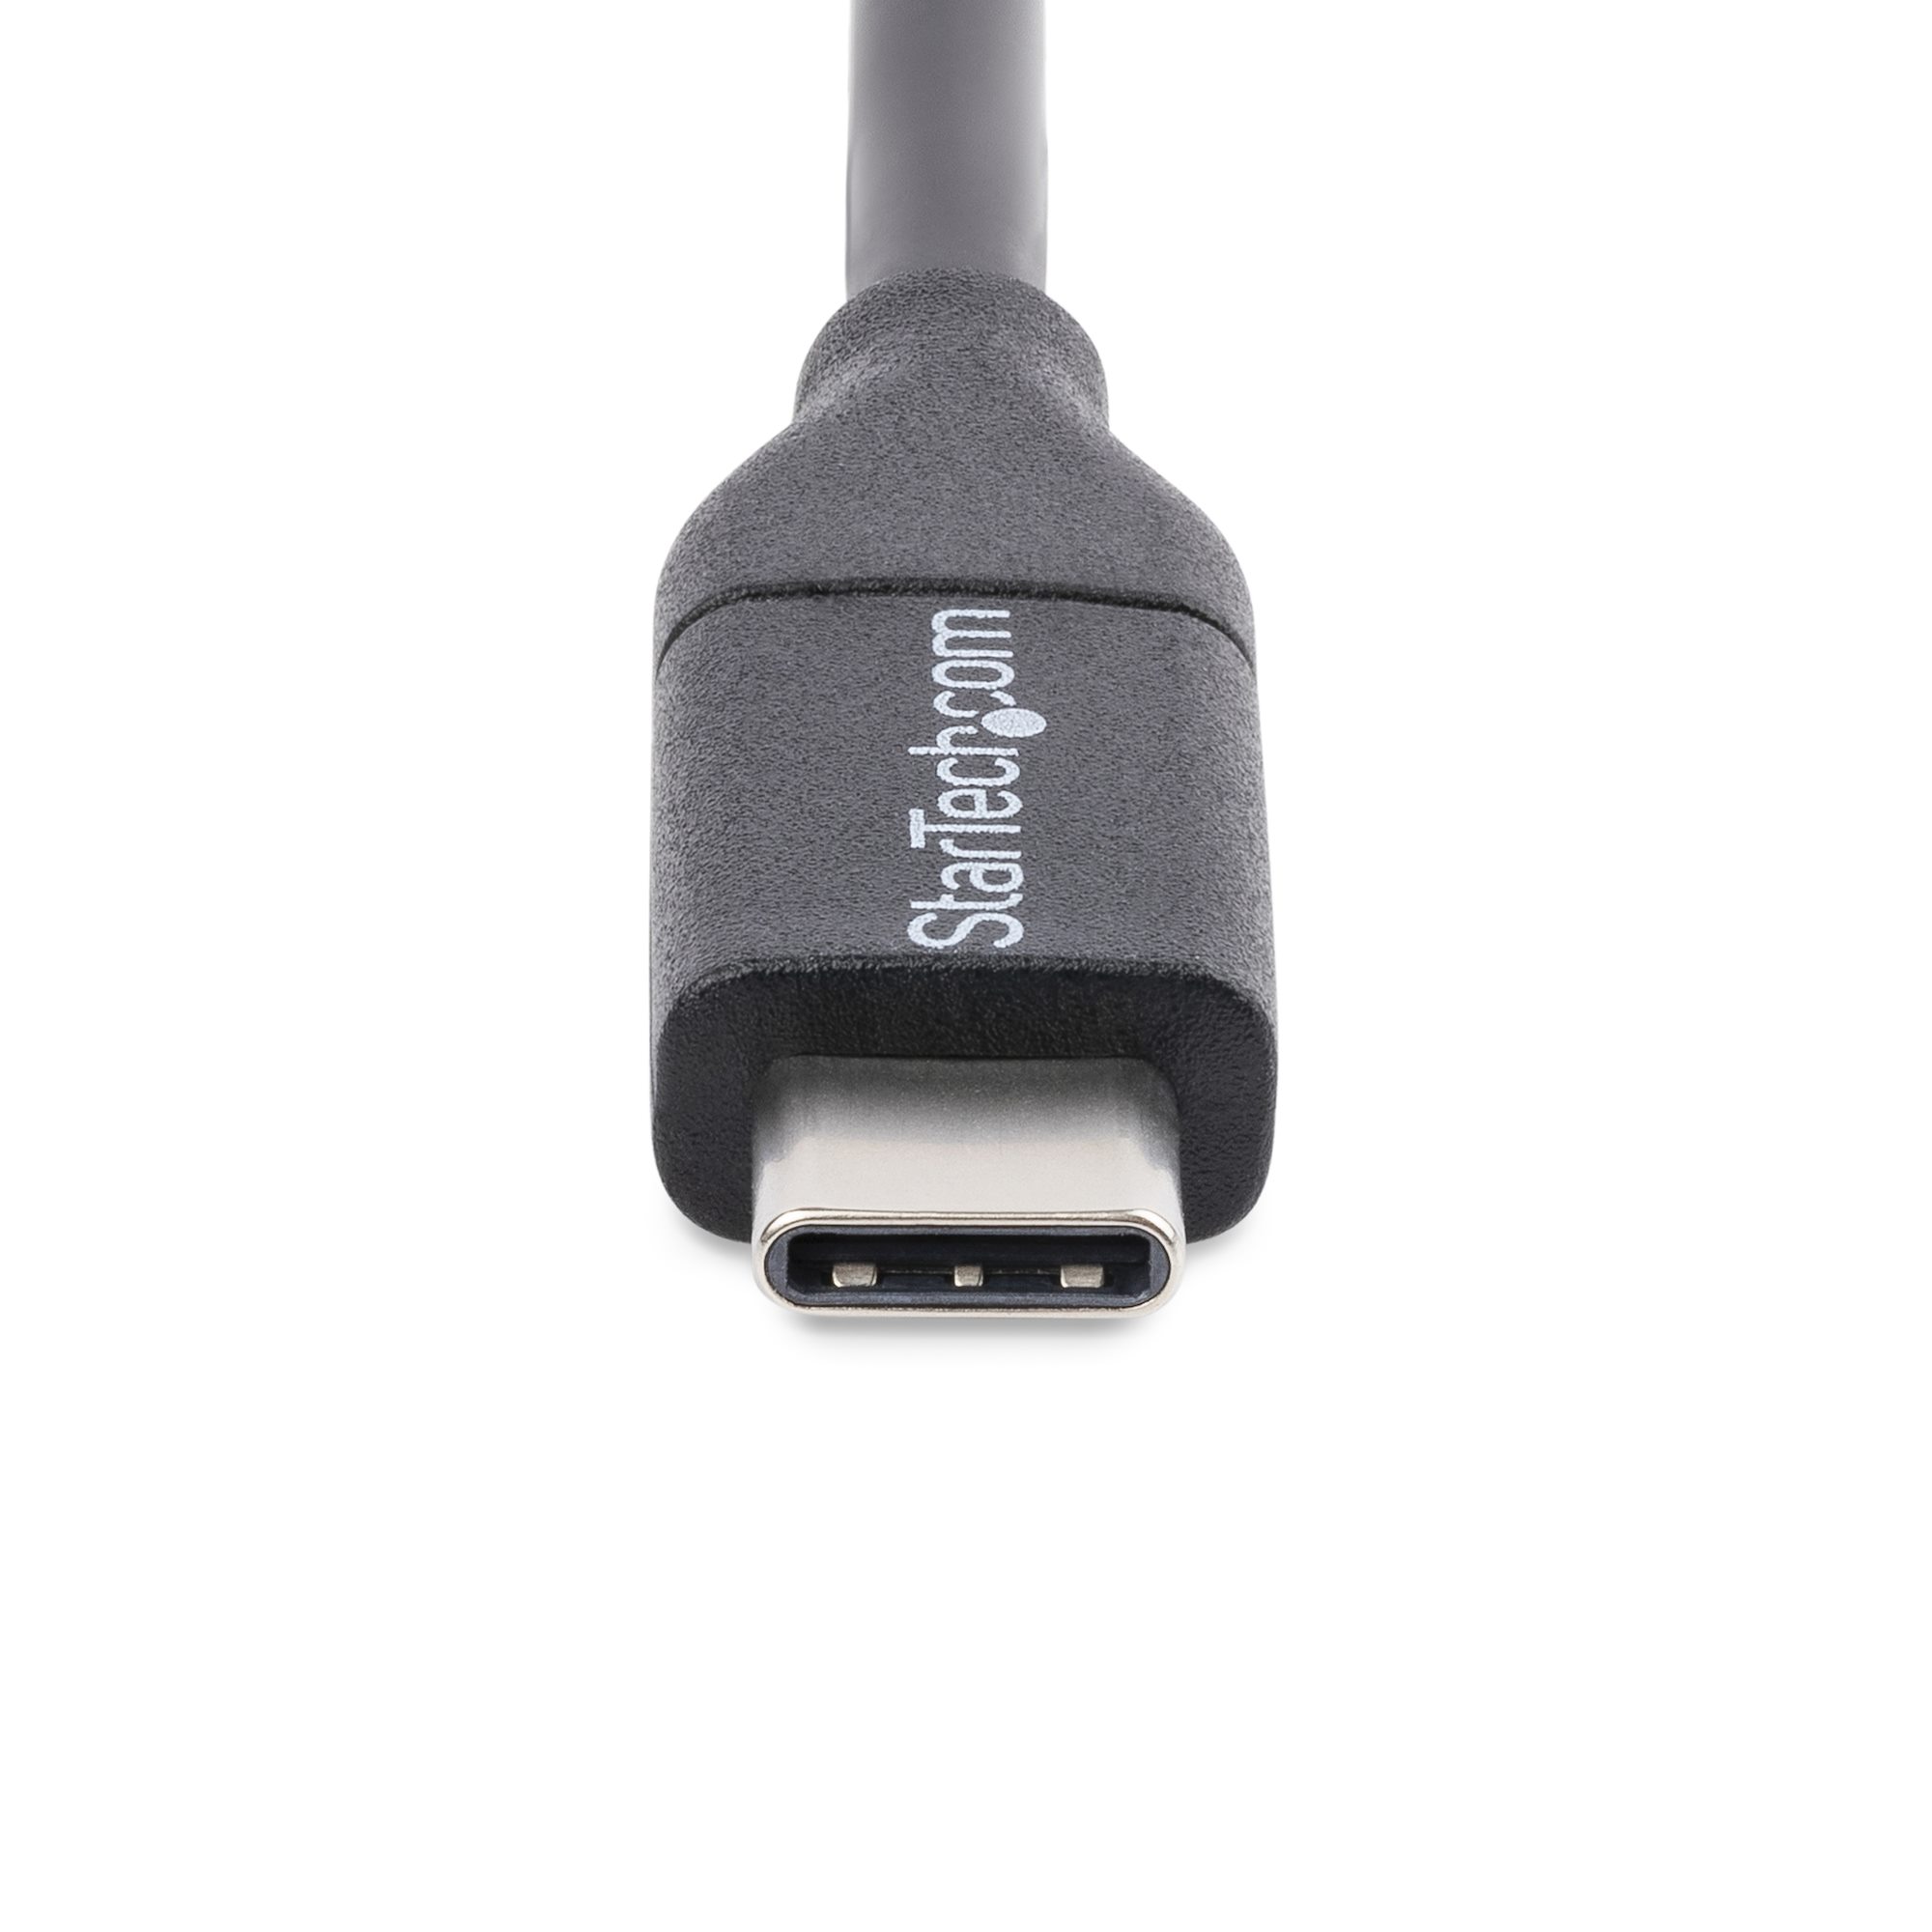 Conector USB 3.1 tipo C macho a Micro USB 2.0 Cable de extensión